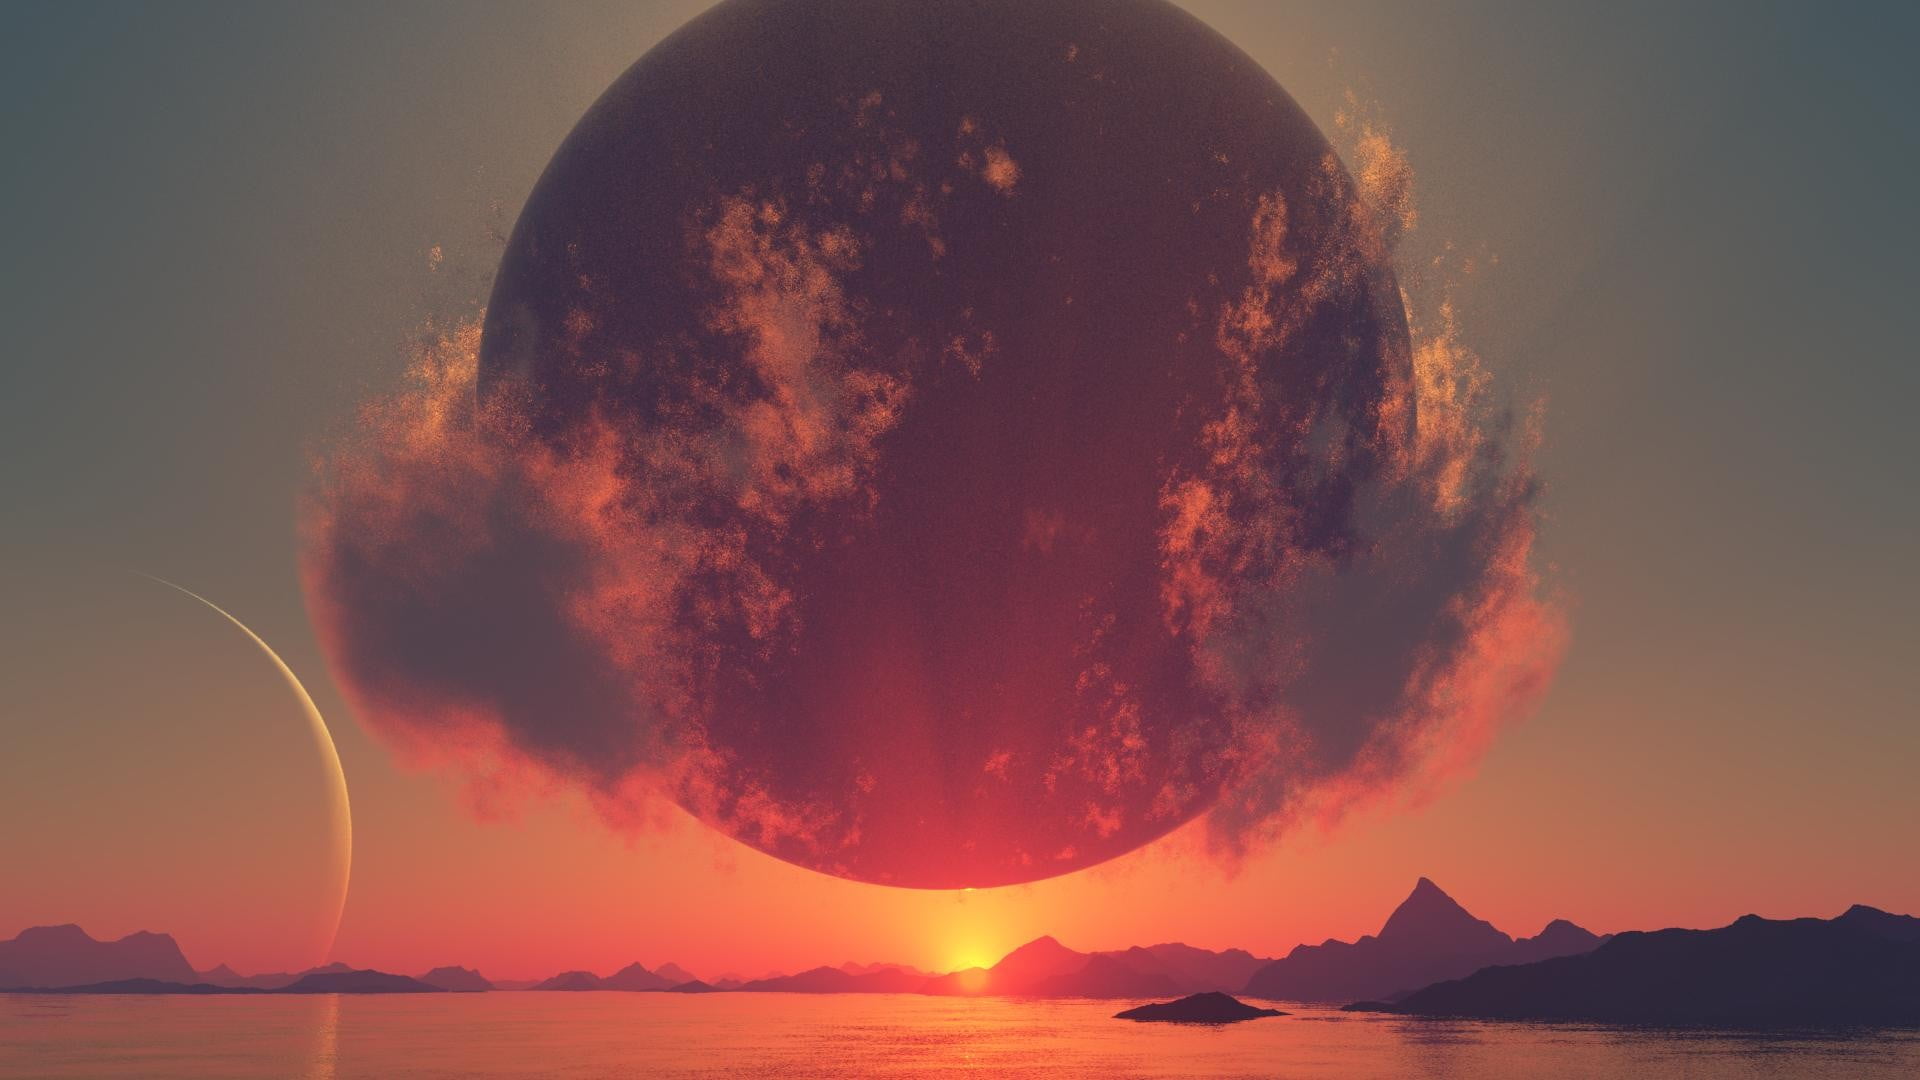 round black moon illustration, digital art, landscape, sunlight